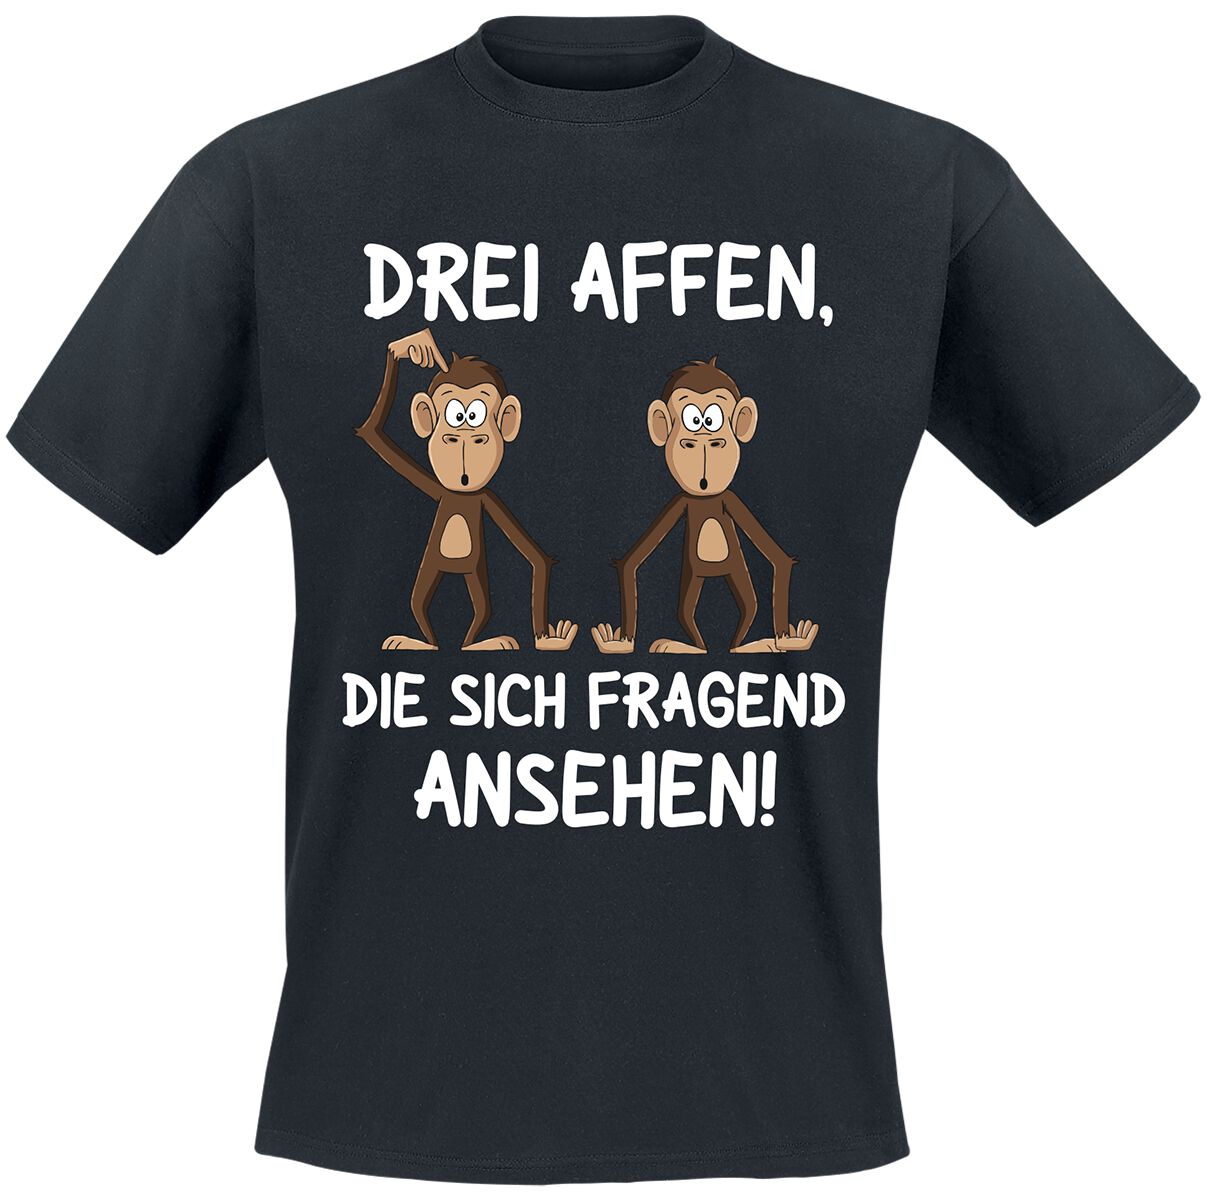 Tierisch Drei Affen, die sich fragend ansehen! T-Shirt schwarz in 3XL